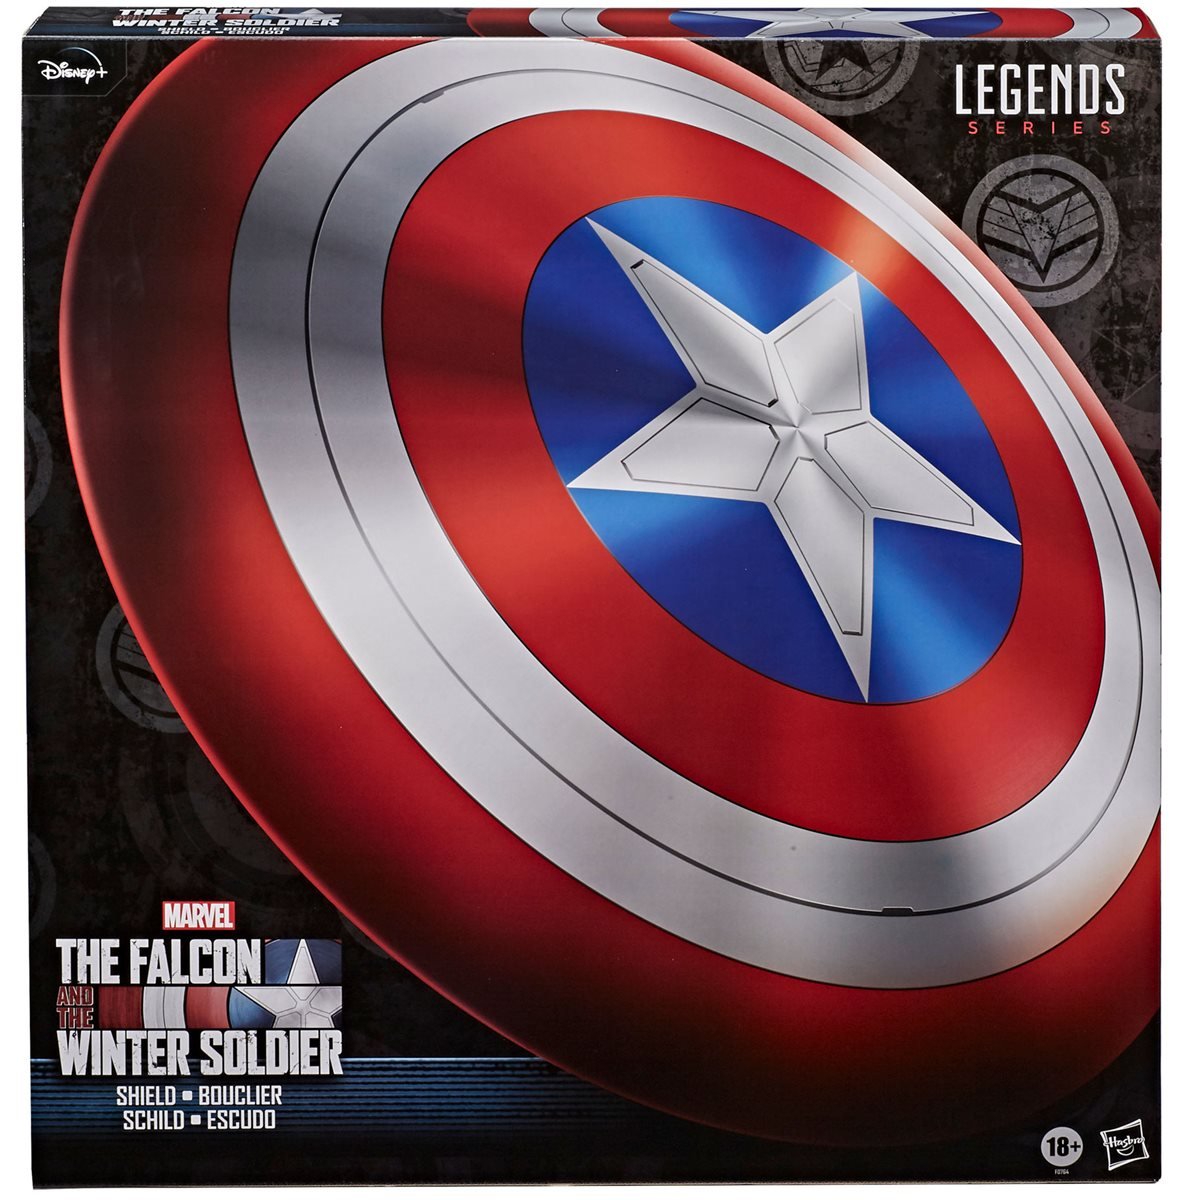 Falcon-and-Winter-Soldier-Captain-America-Shield-003.jpg